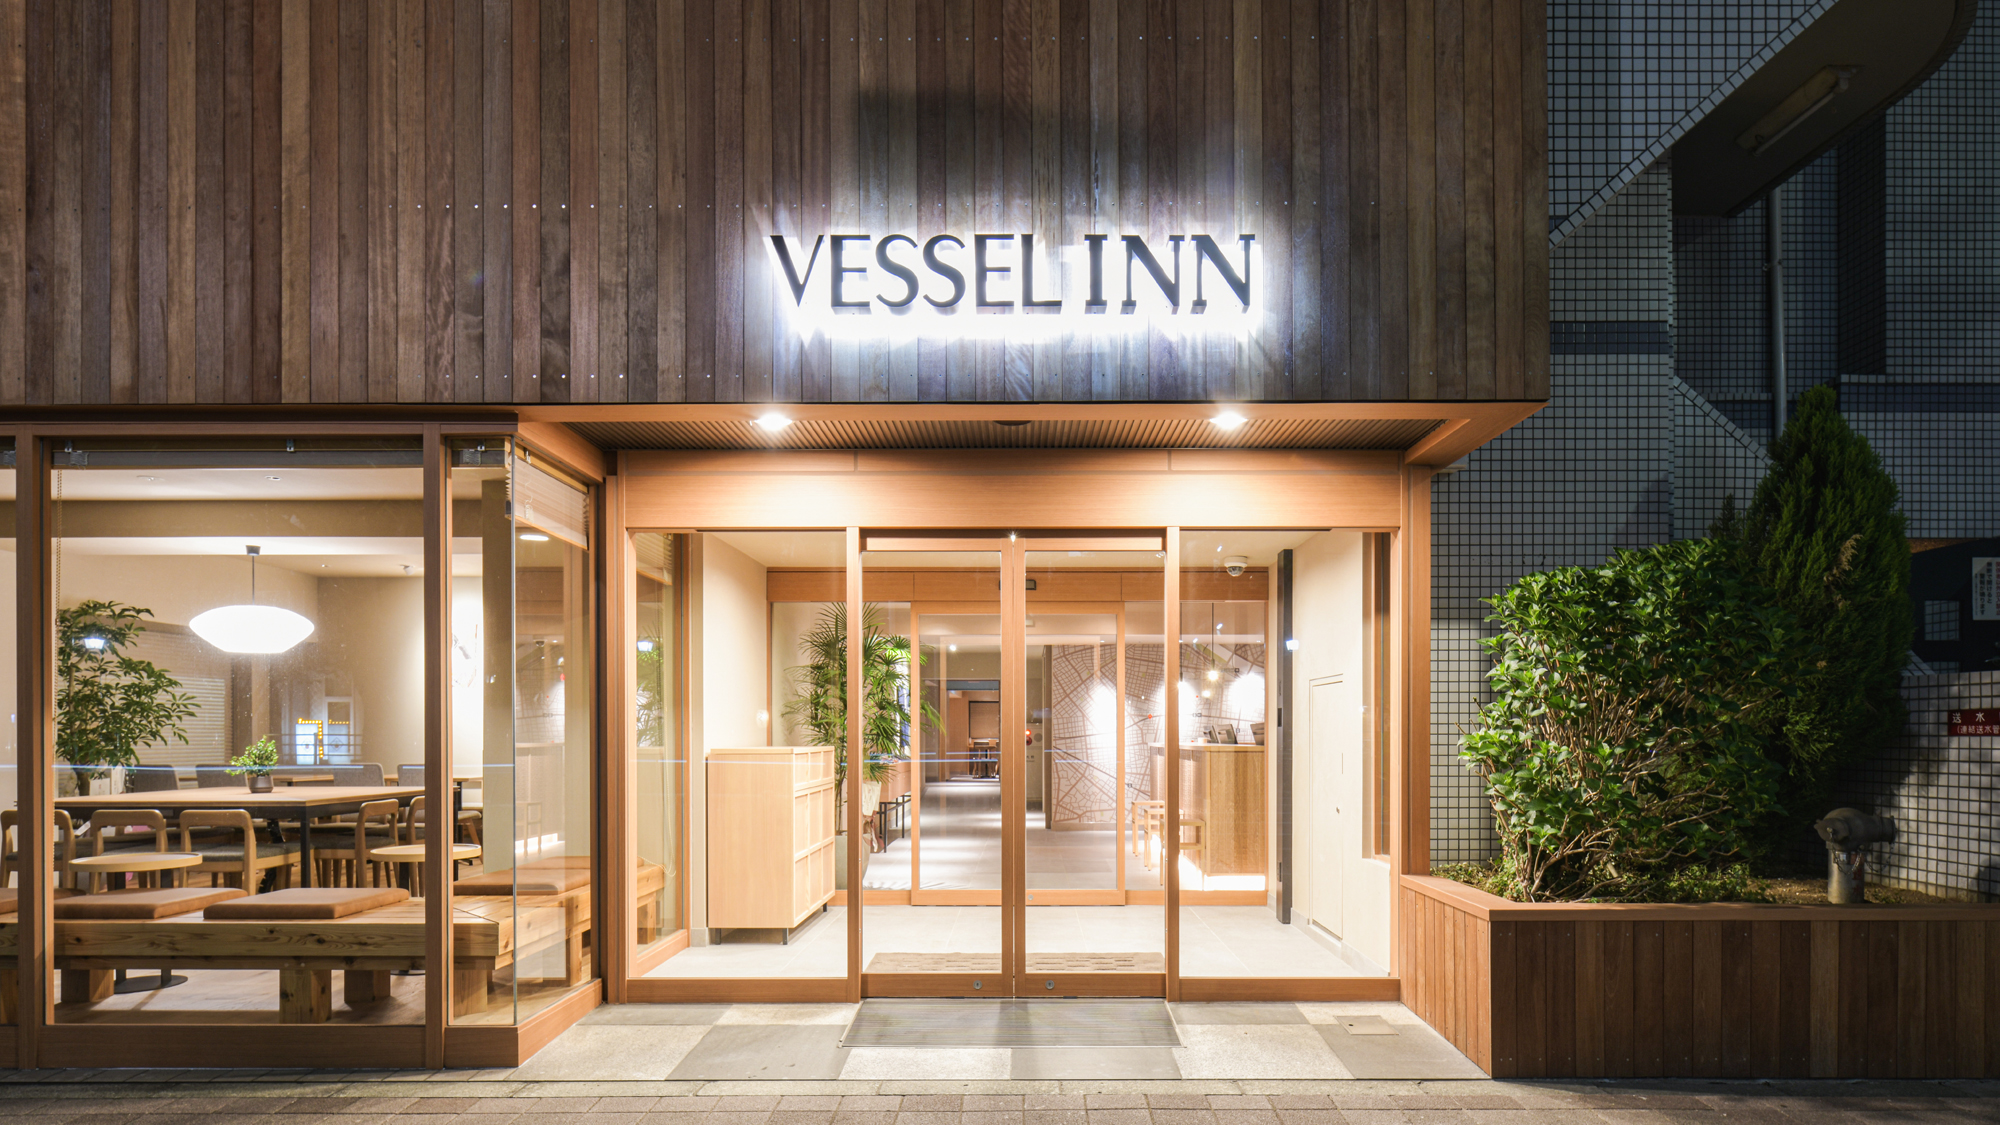 淺草筑波 Express Vessel Inn 